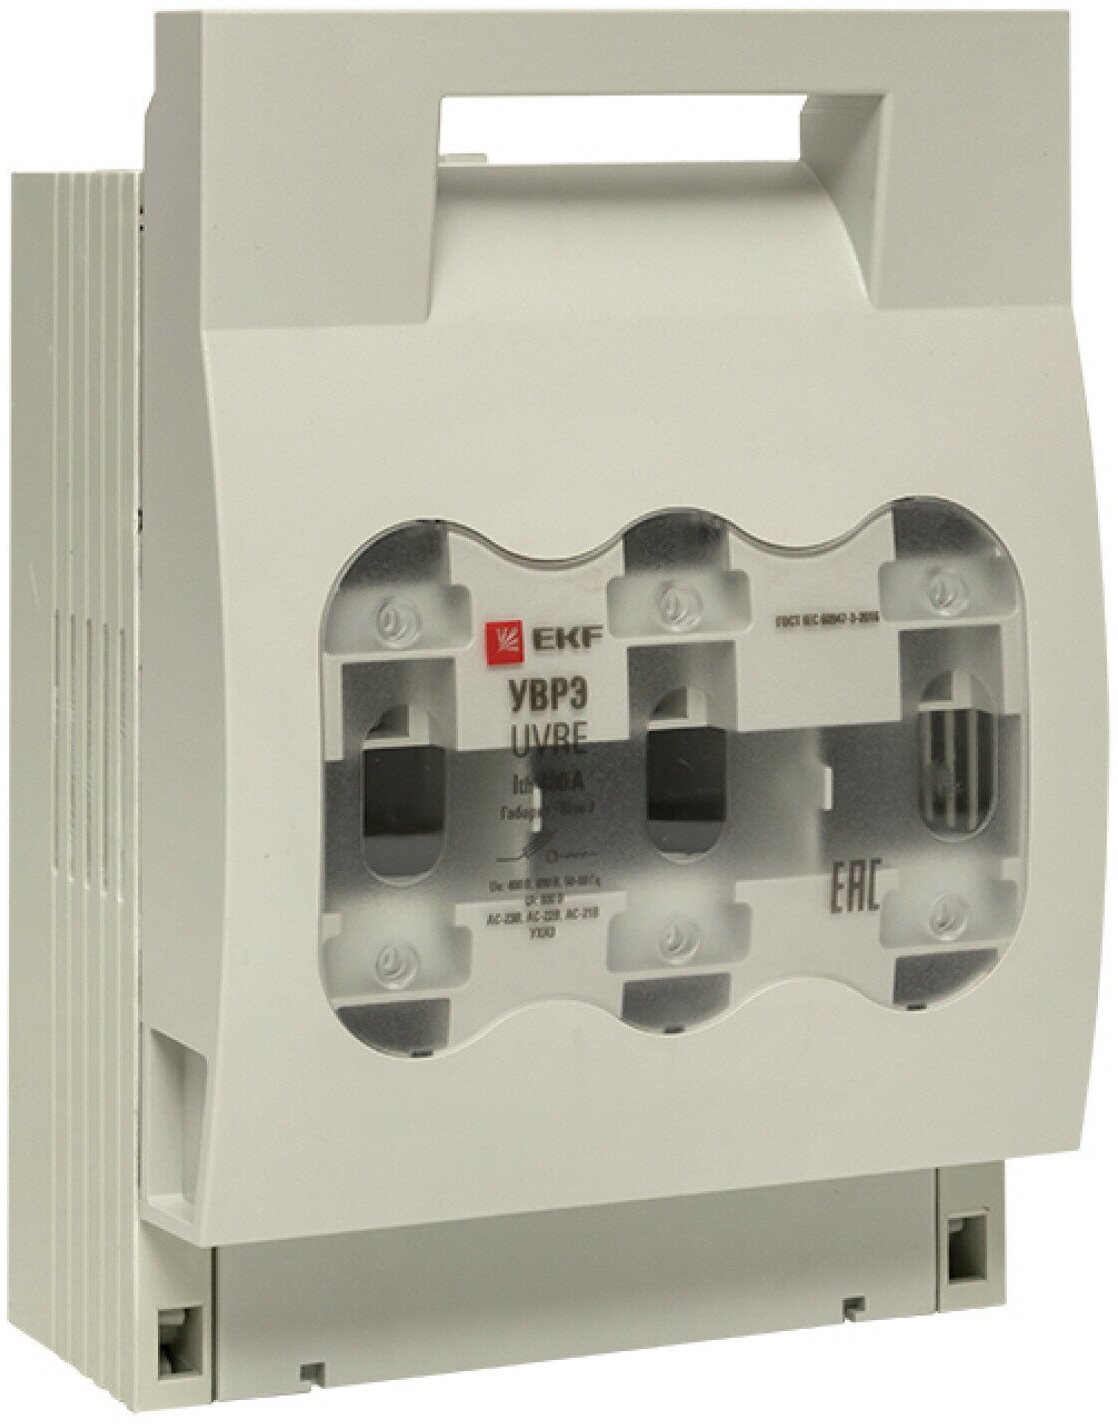 Выключатель-разъединитель уврэ 400А откидного типа под предохранители ППН (габ.2) EKF